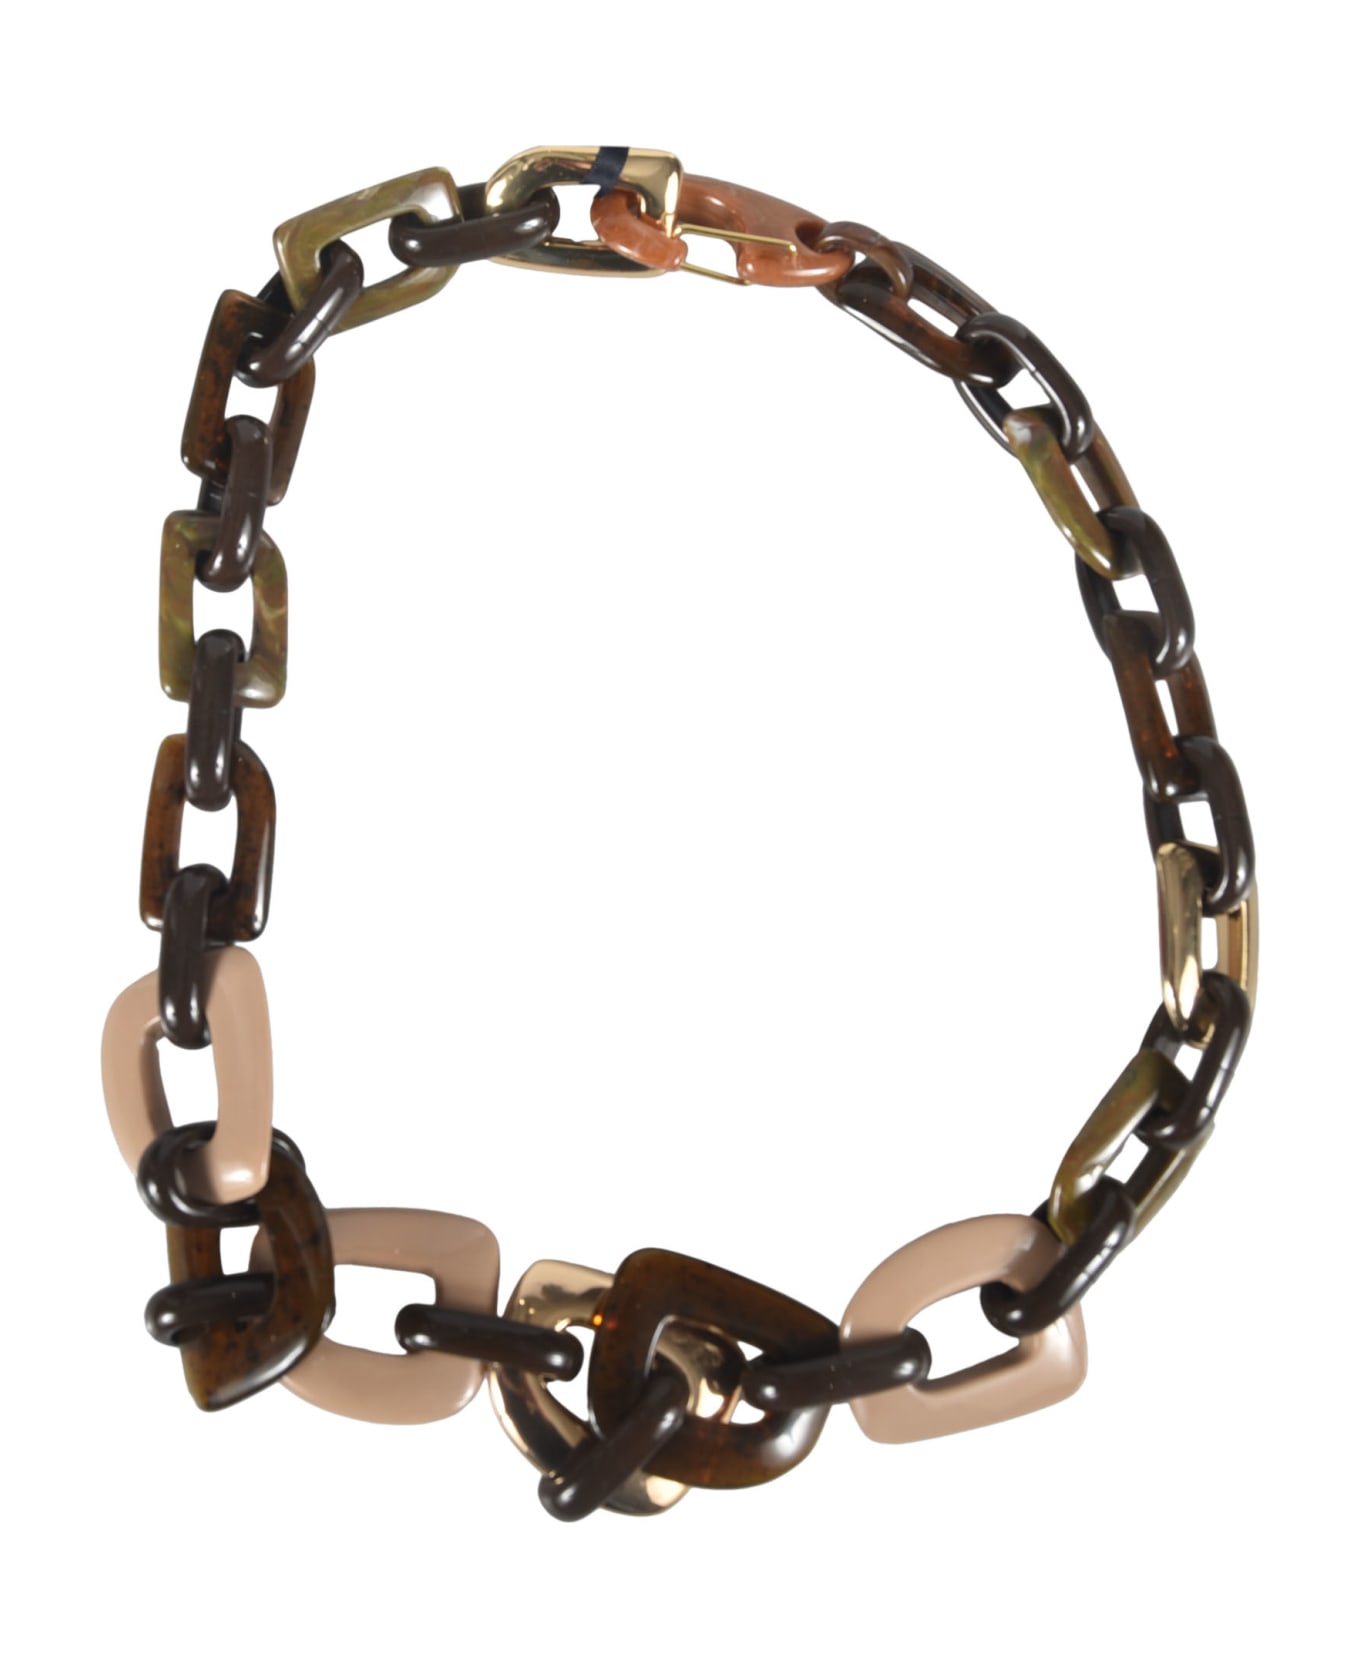 Max Mara The Cube Chain Necklace - Green/Cream